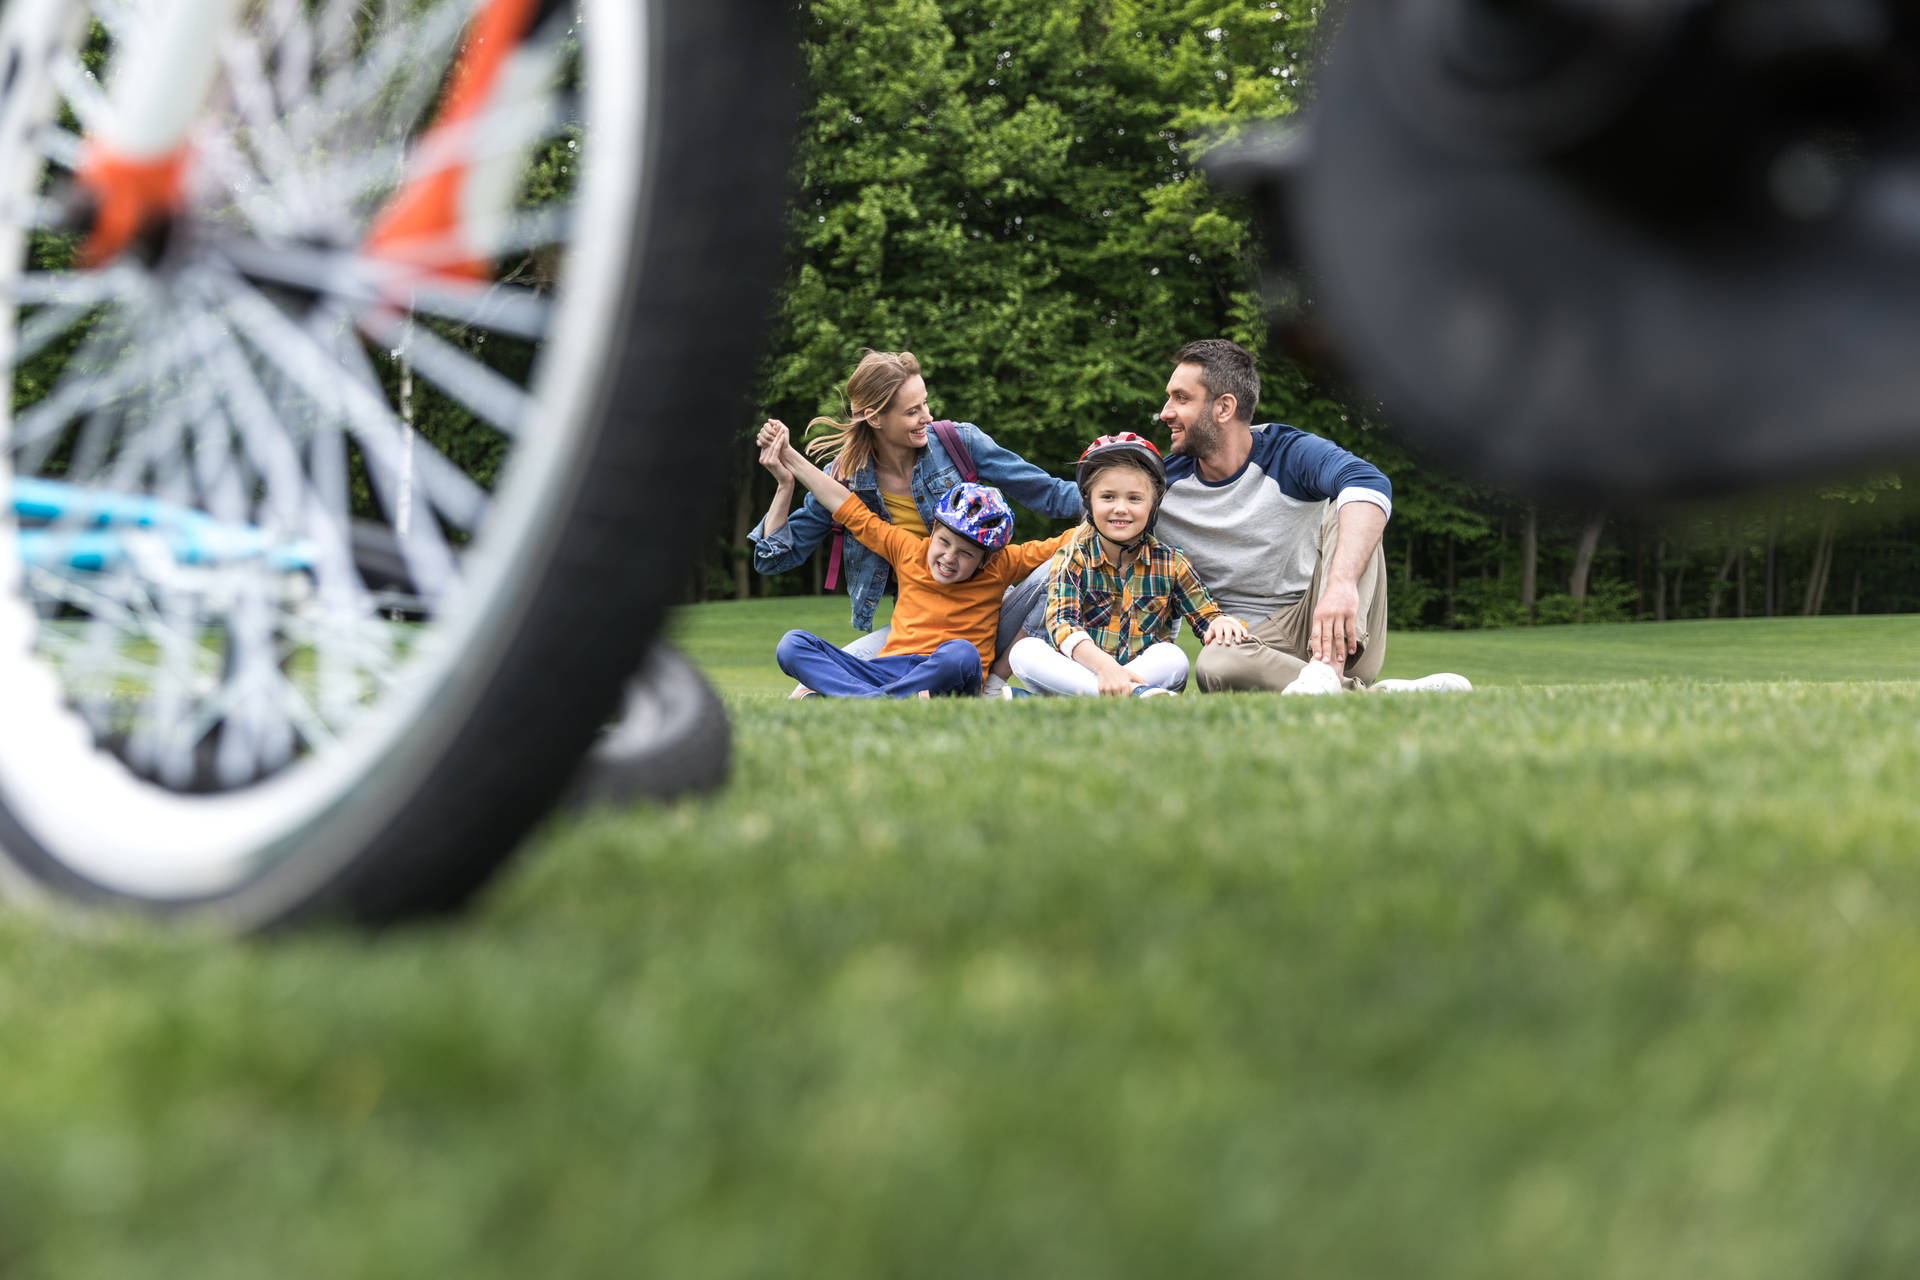 Family Biking Bonding Background